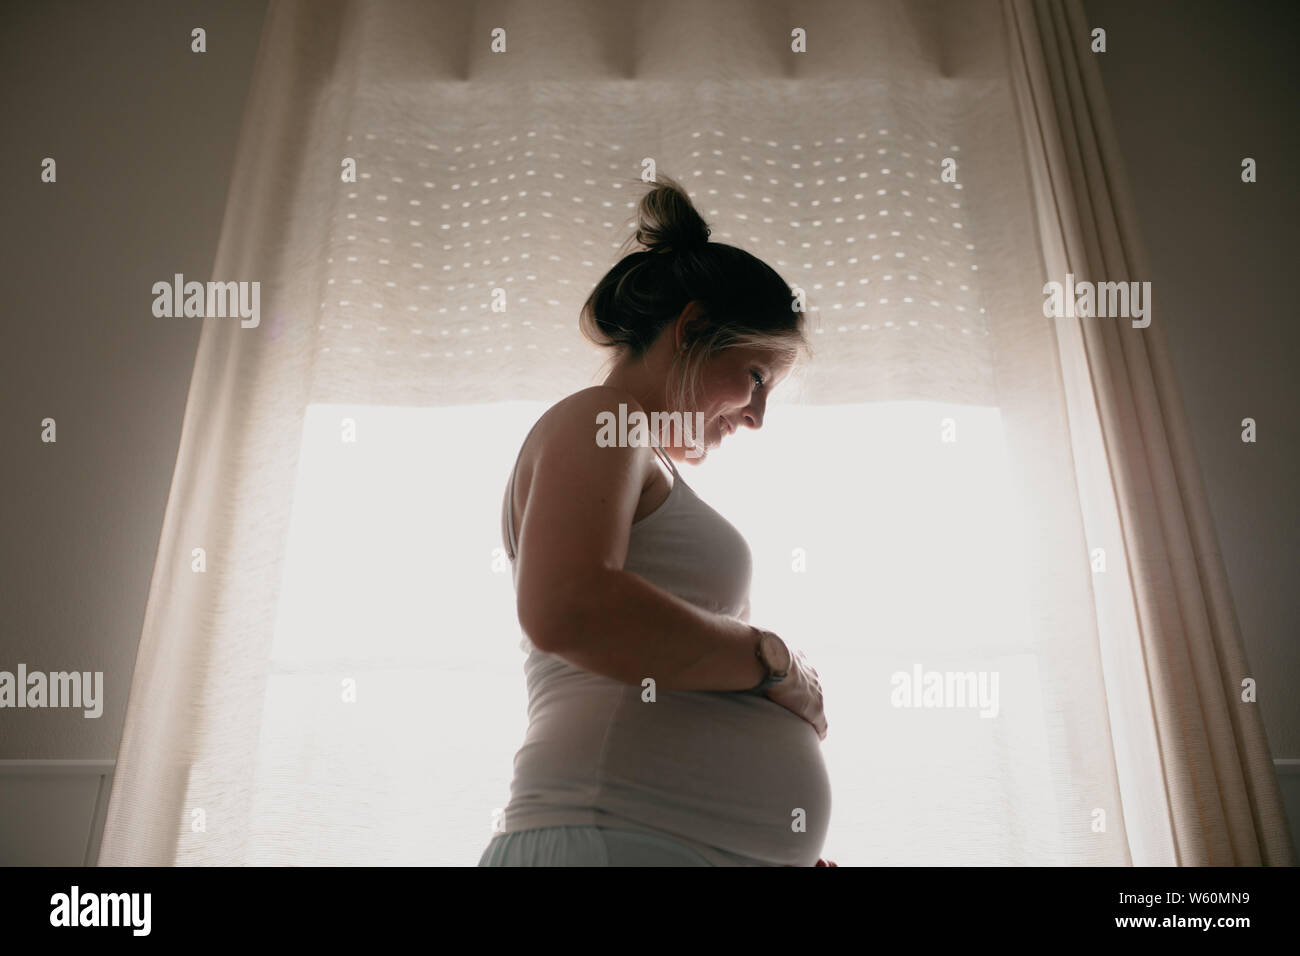 Rétroéclairage de pregnant woman touching her belly Banque D'Images